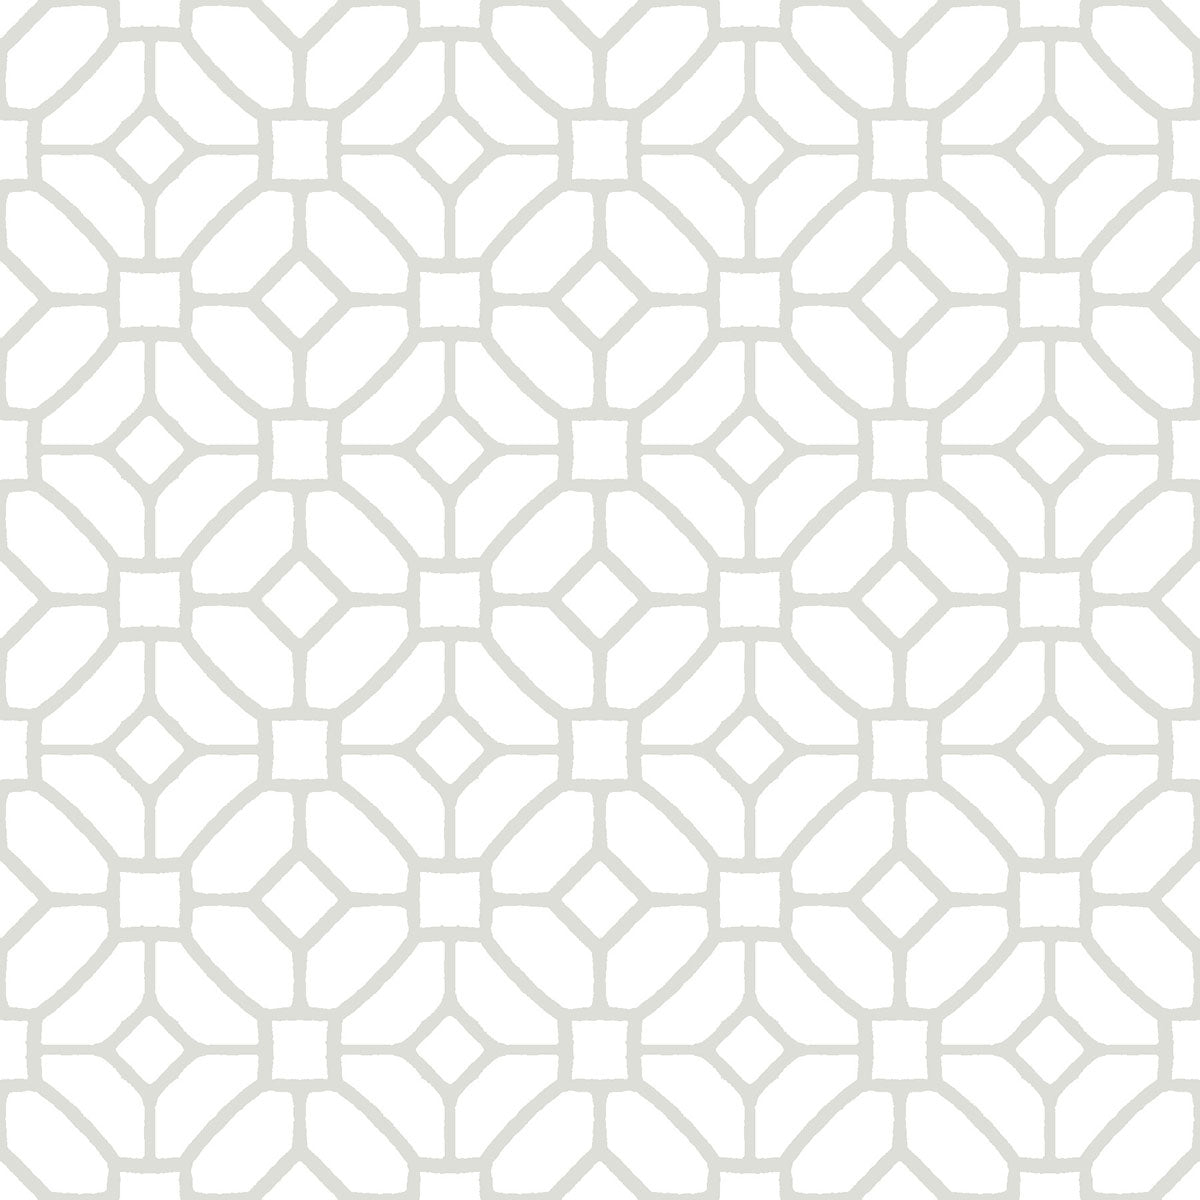 Lattice Peel and Stick Floor Tiles Peel and Stick Floor Tiles FloorPops   